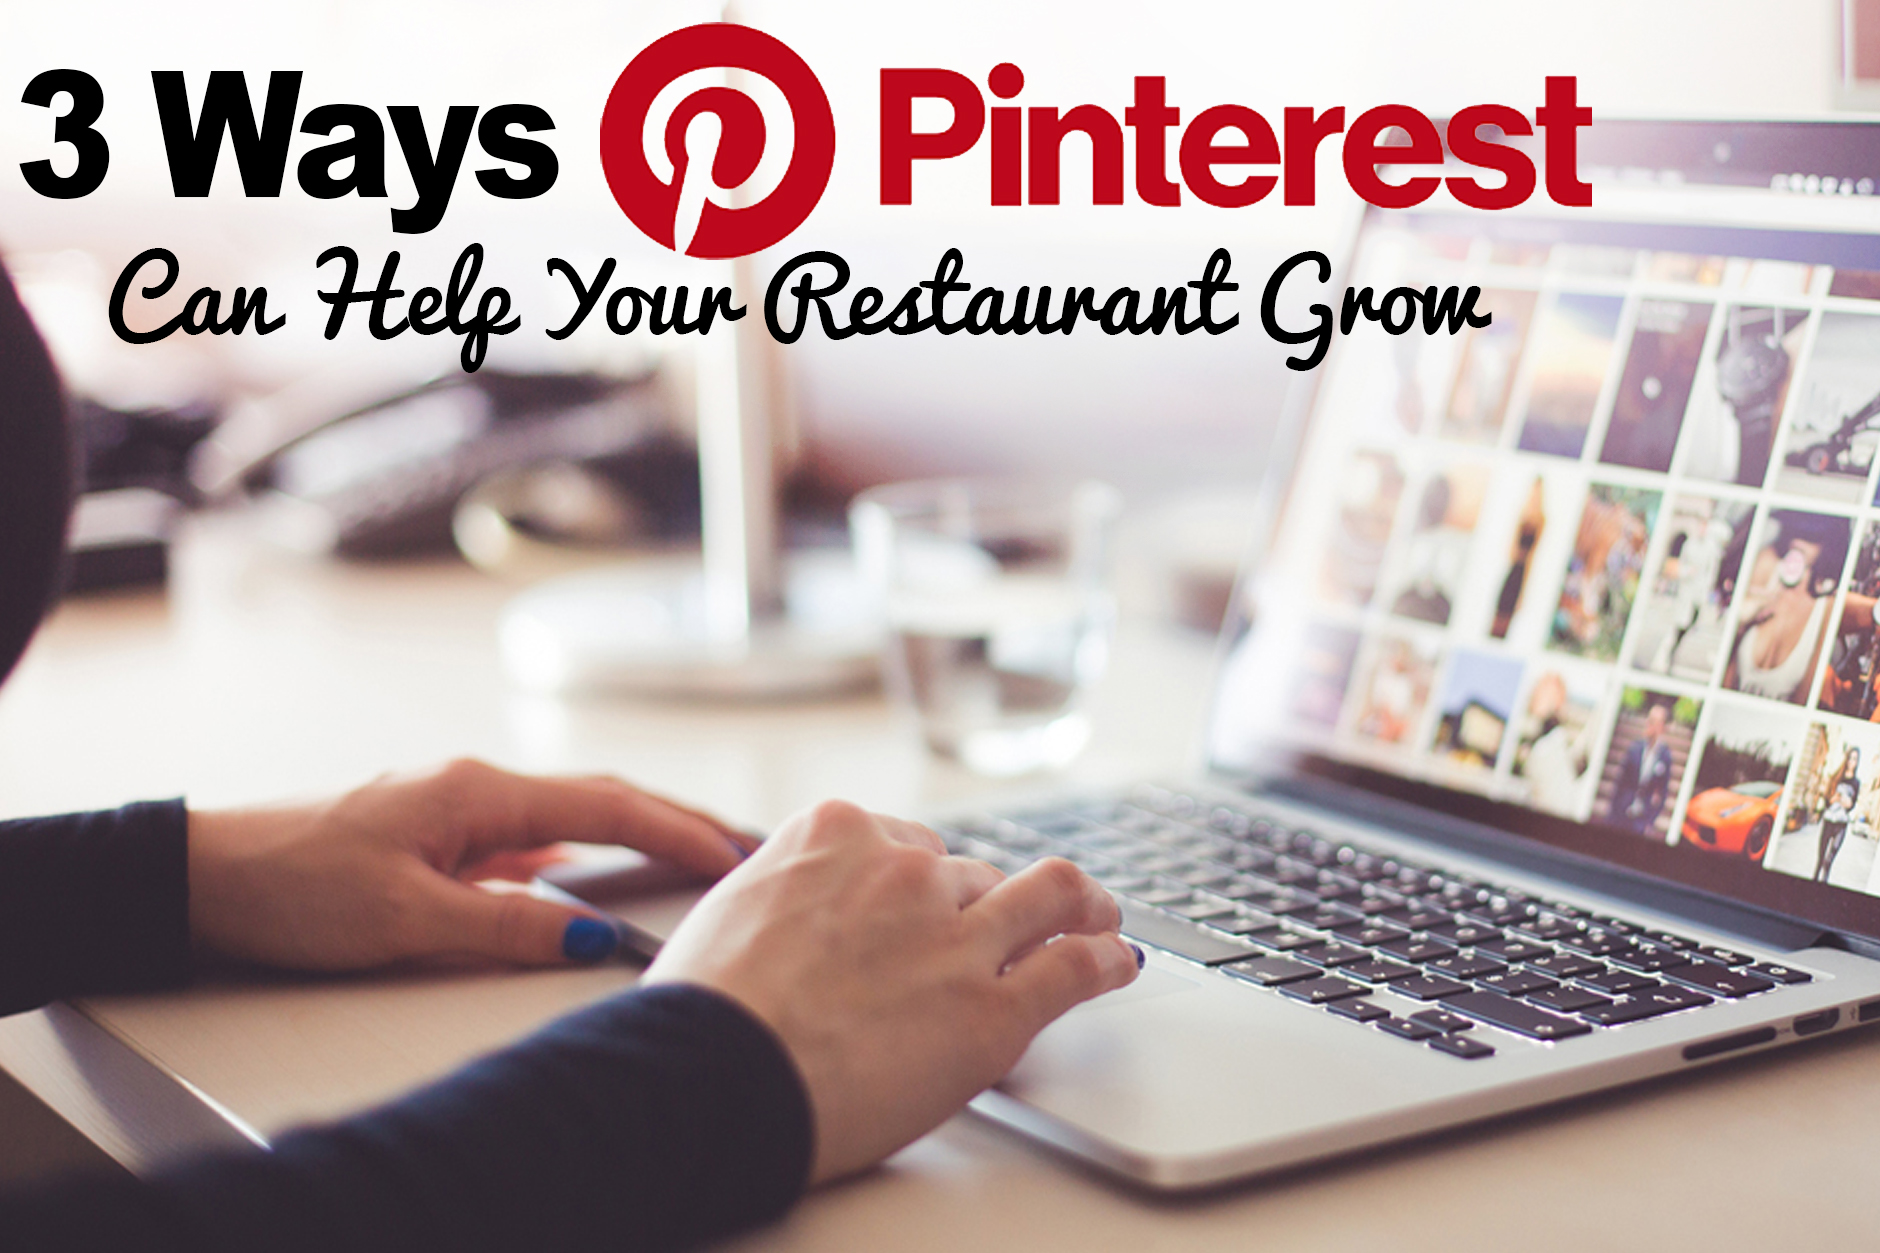 Pinterest For Restaurants: 3 Ways Pinterest Can Help